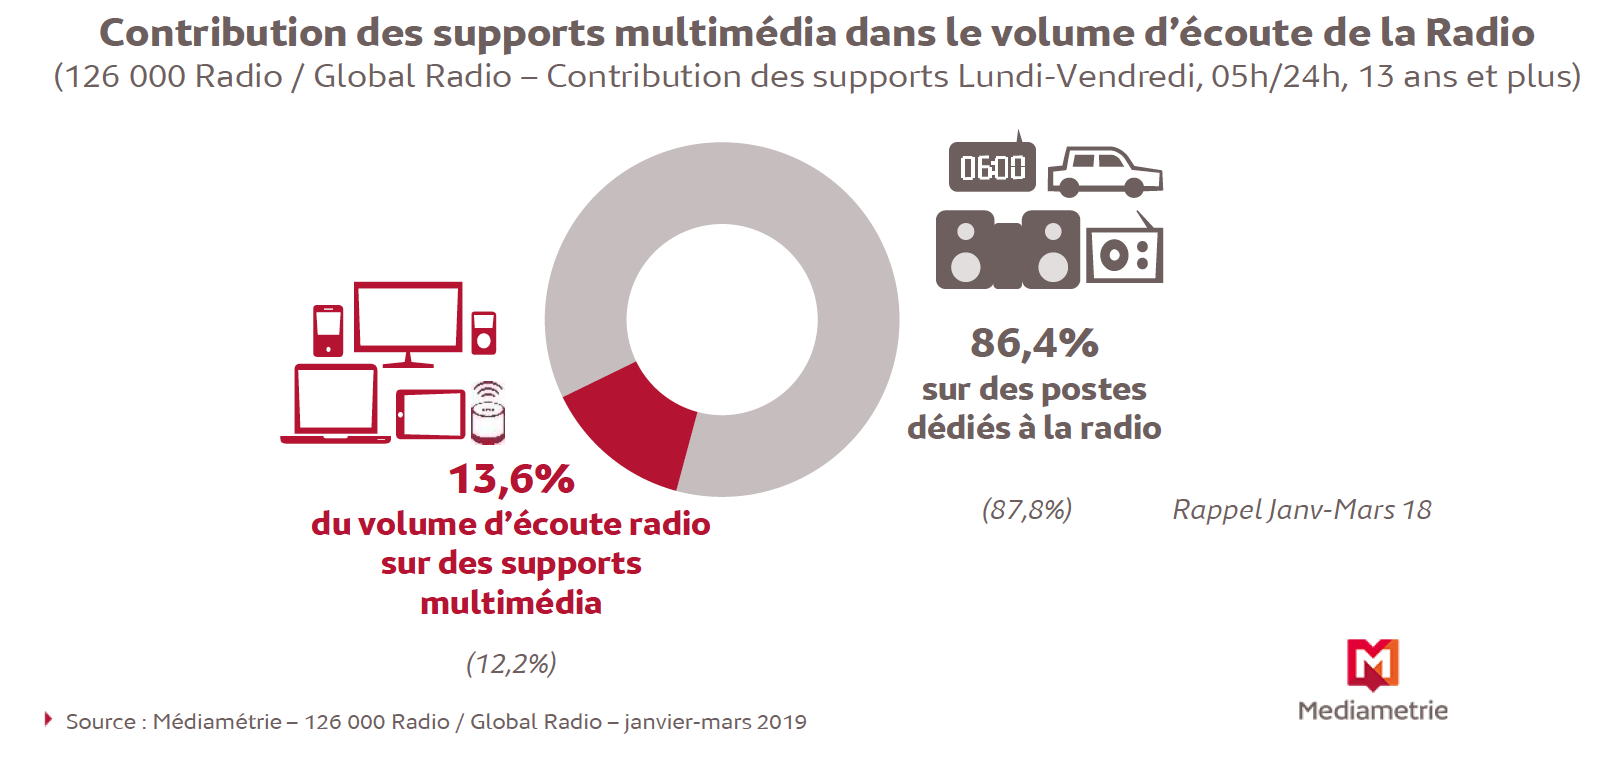 7.2 millions de personnes écoutent la radio sur les supports multimédia